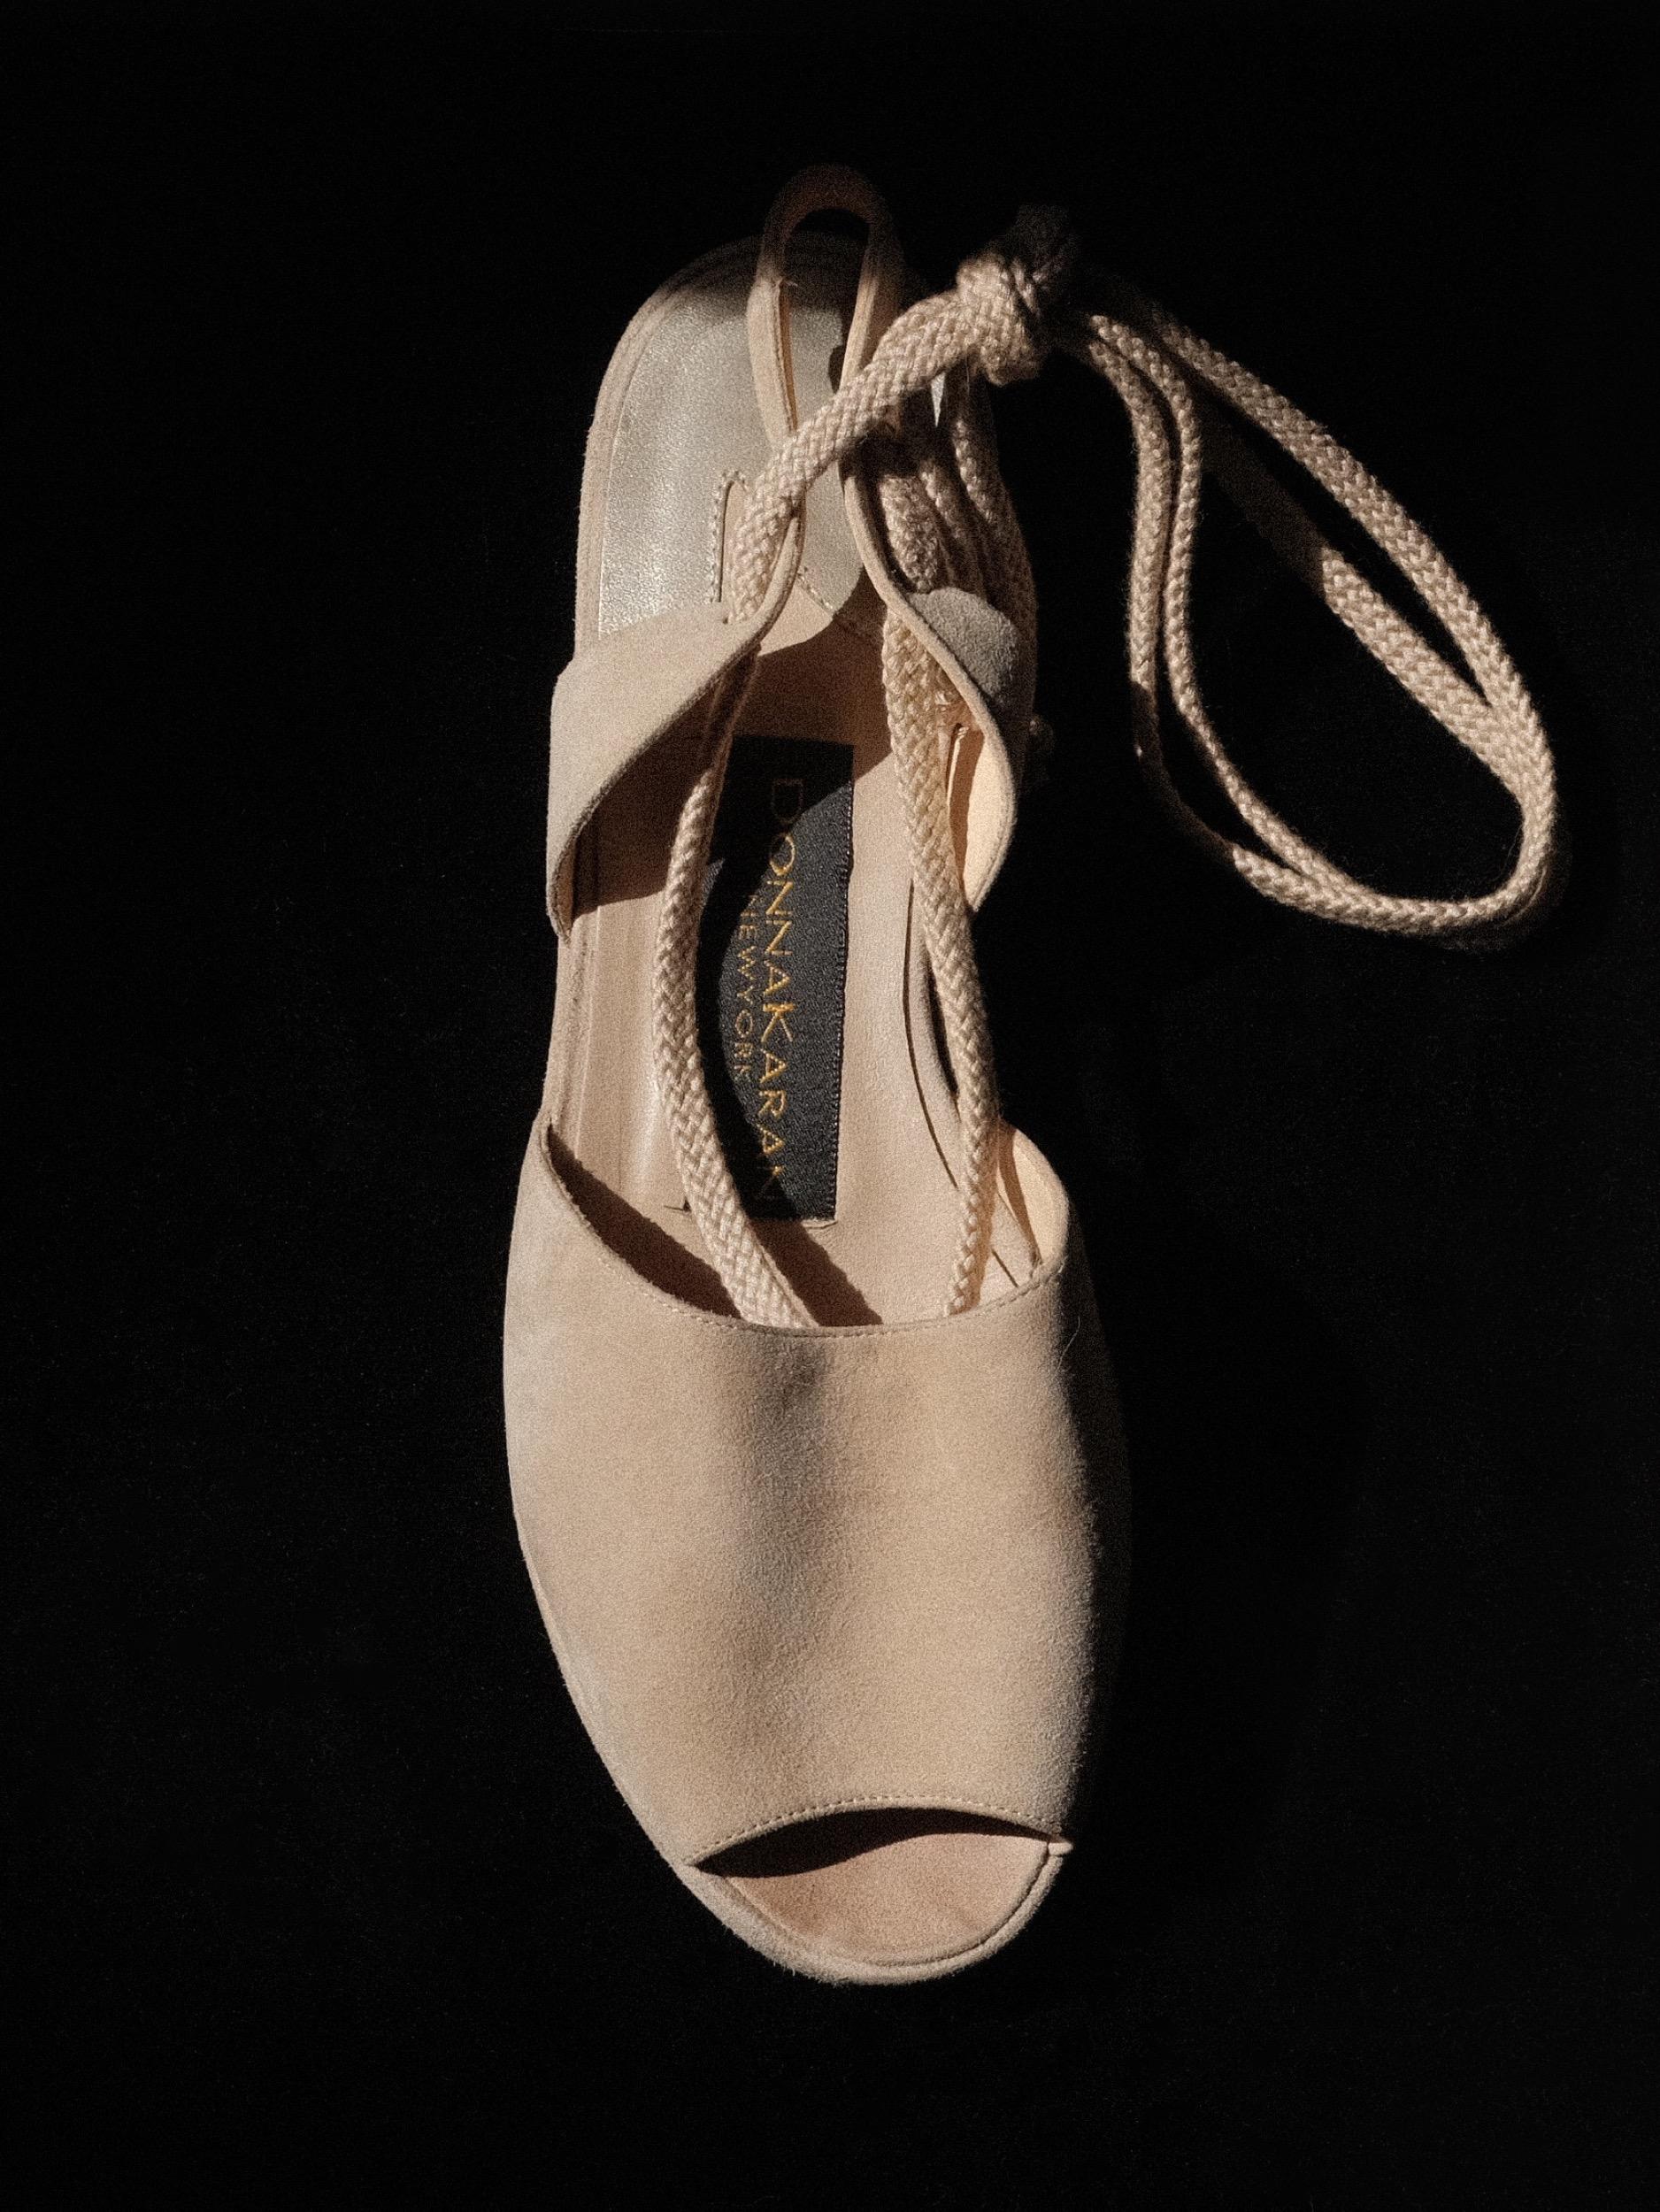 1990's Donna Karan Wildleder-Flats 
Offene Zehe
Knöchelwickel
Leichter Keil aus Wildleder, selbst bezogen
Größe 6.5, passt genau
Unterteil mit Gebrauchsspuren, Oberteil in gutem Zustand, geringe Gebrauchsspuren
Hergestellt in Italien